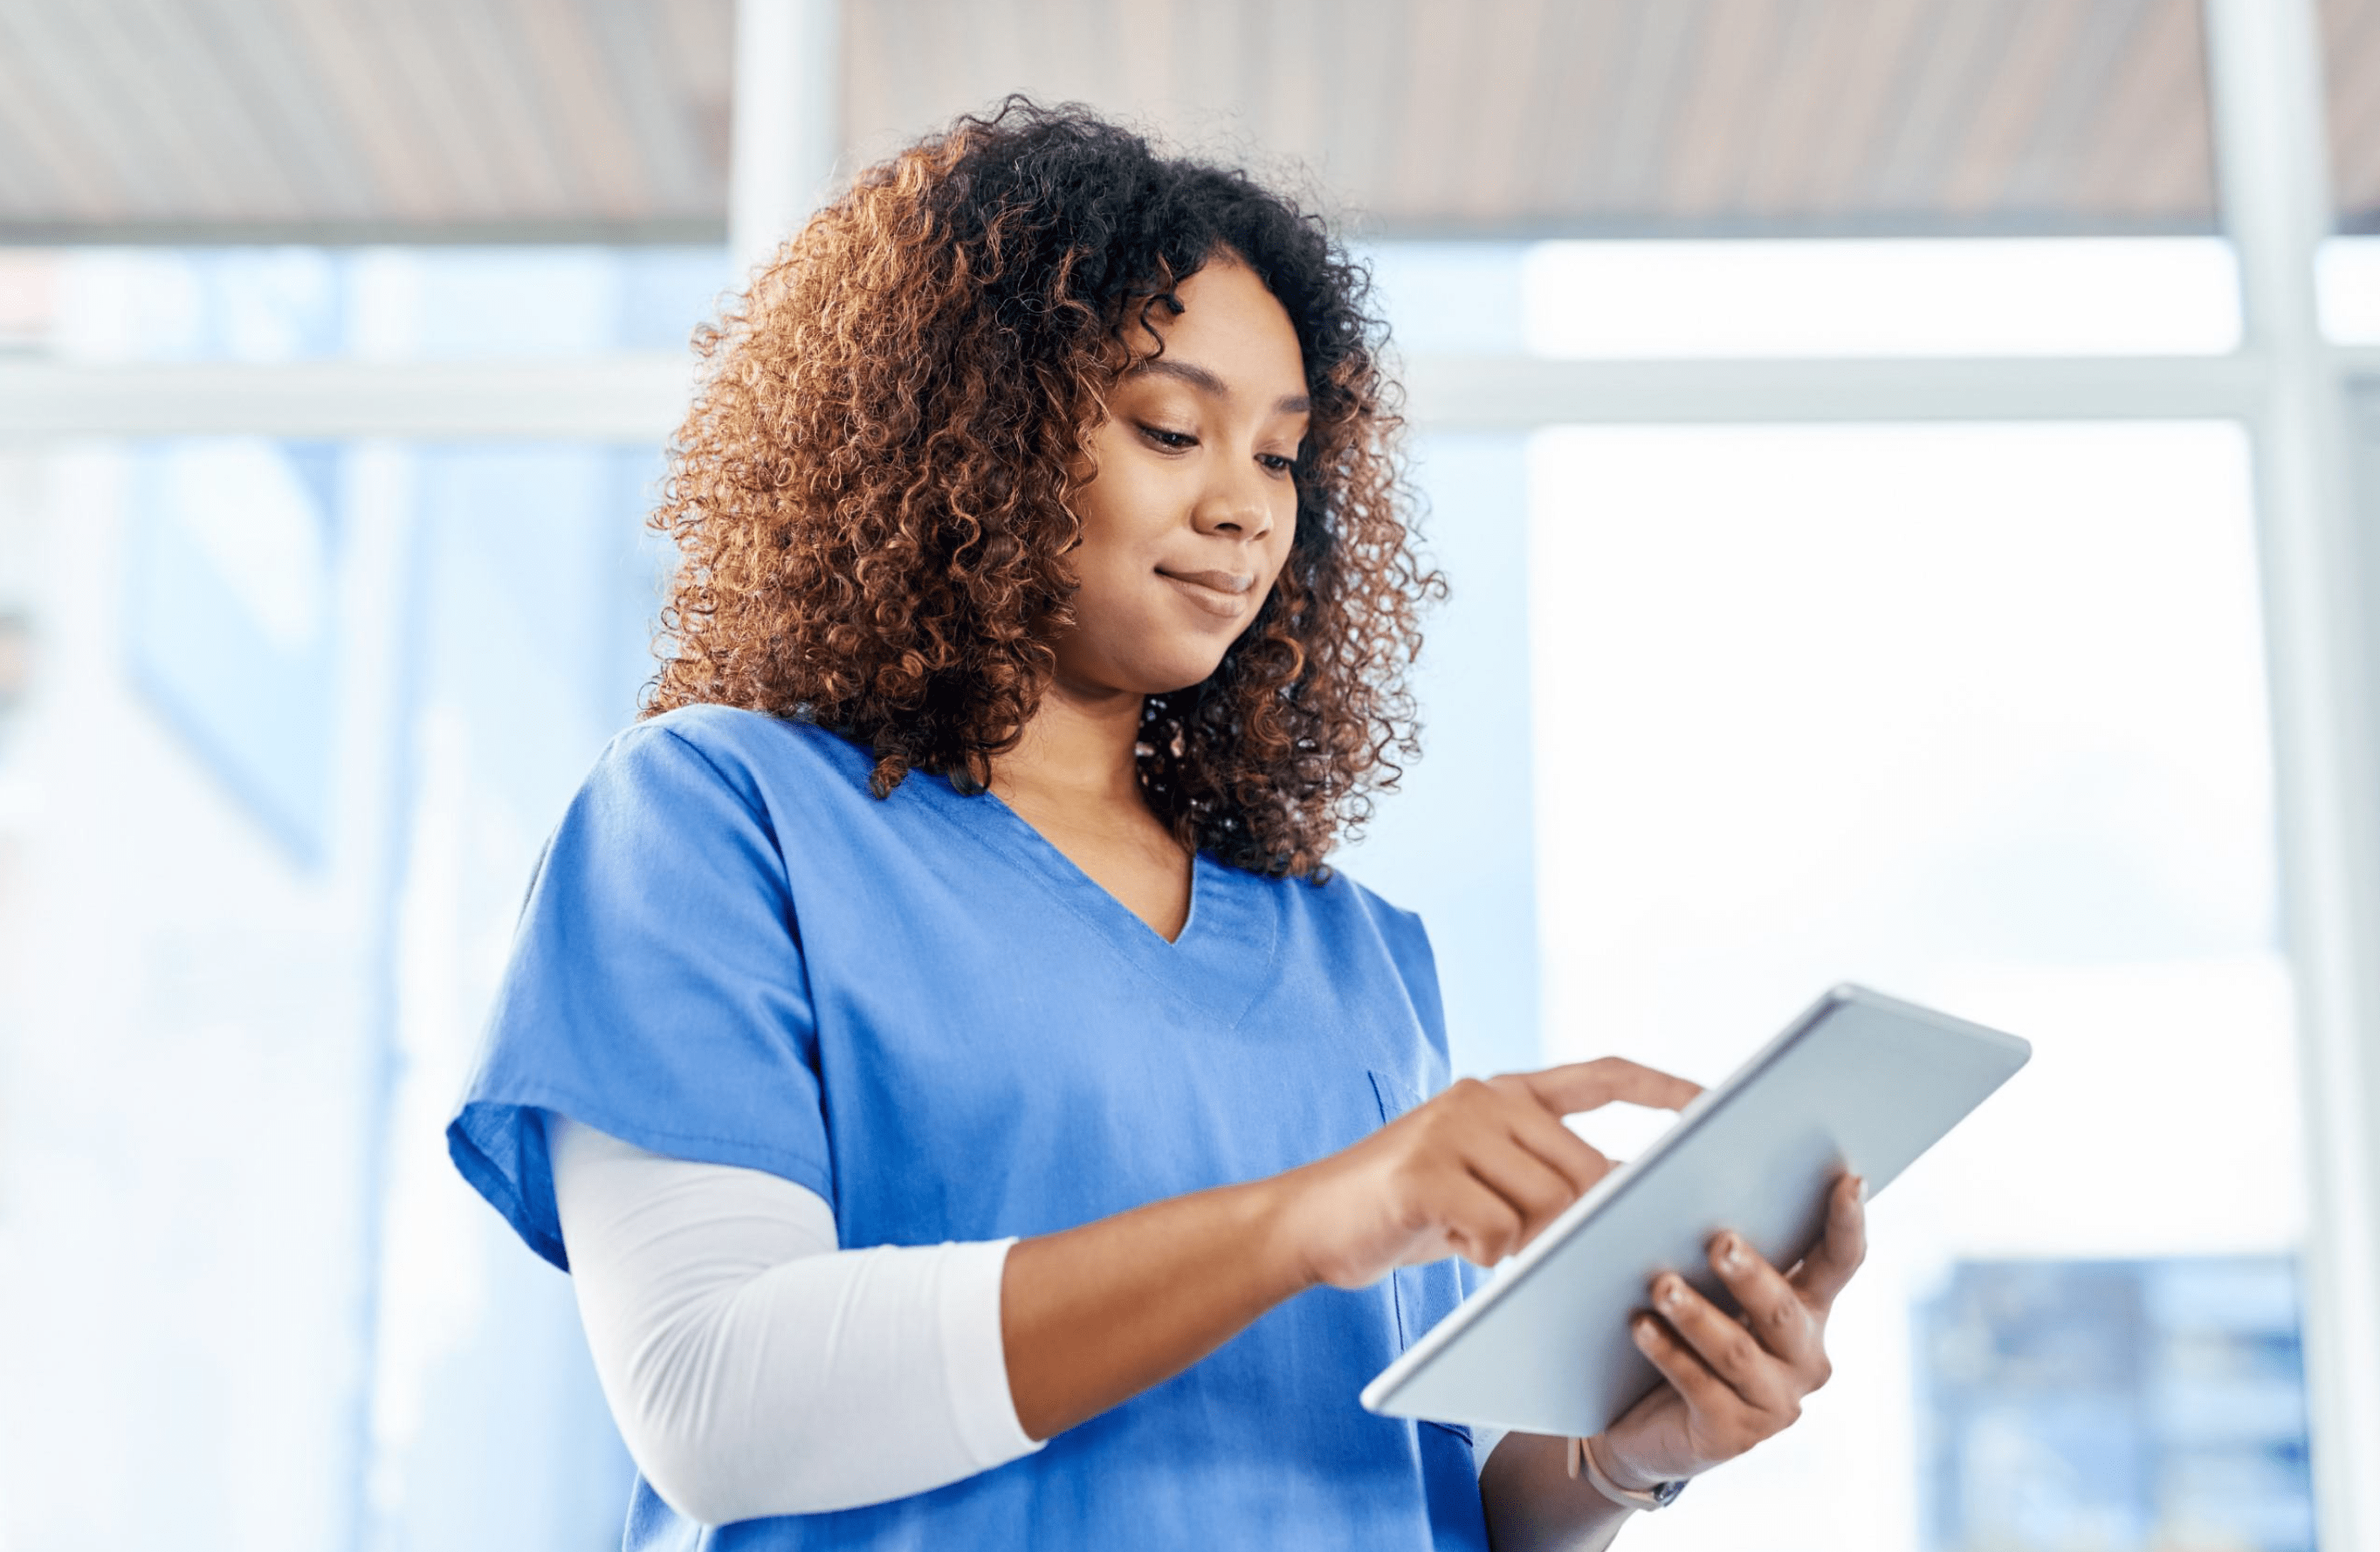 Medspa employee uses medical spa software on her tablet